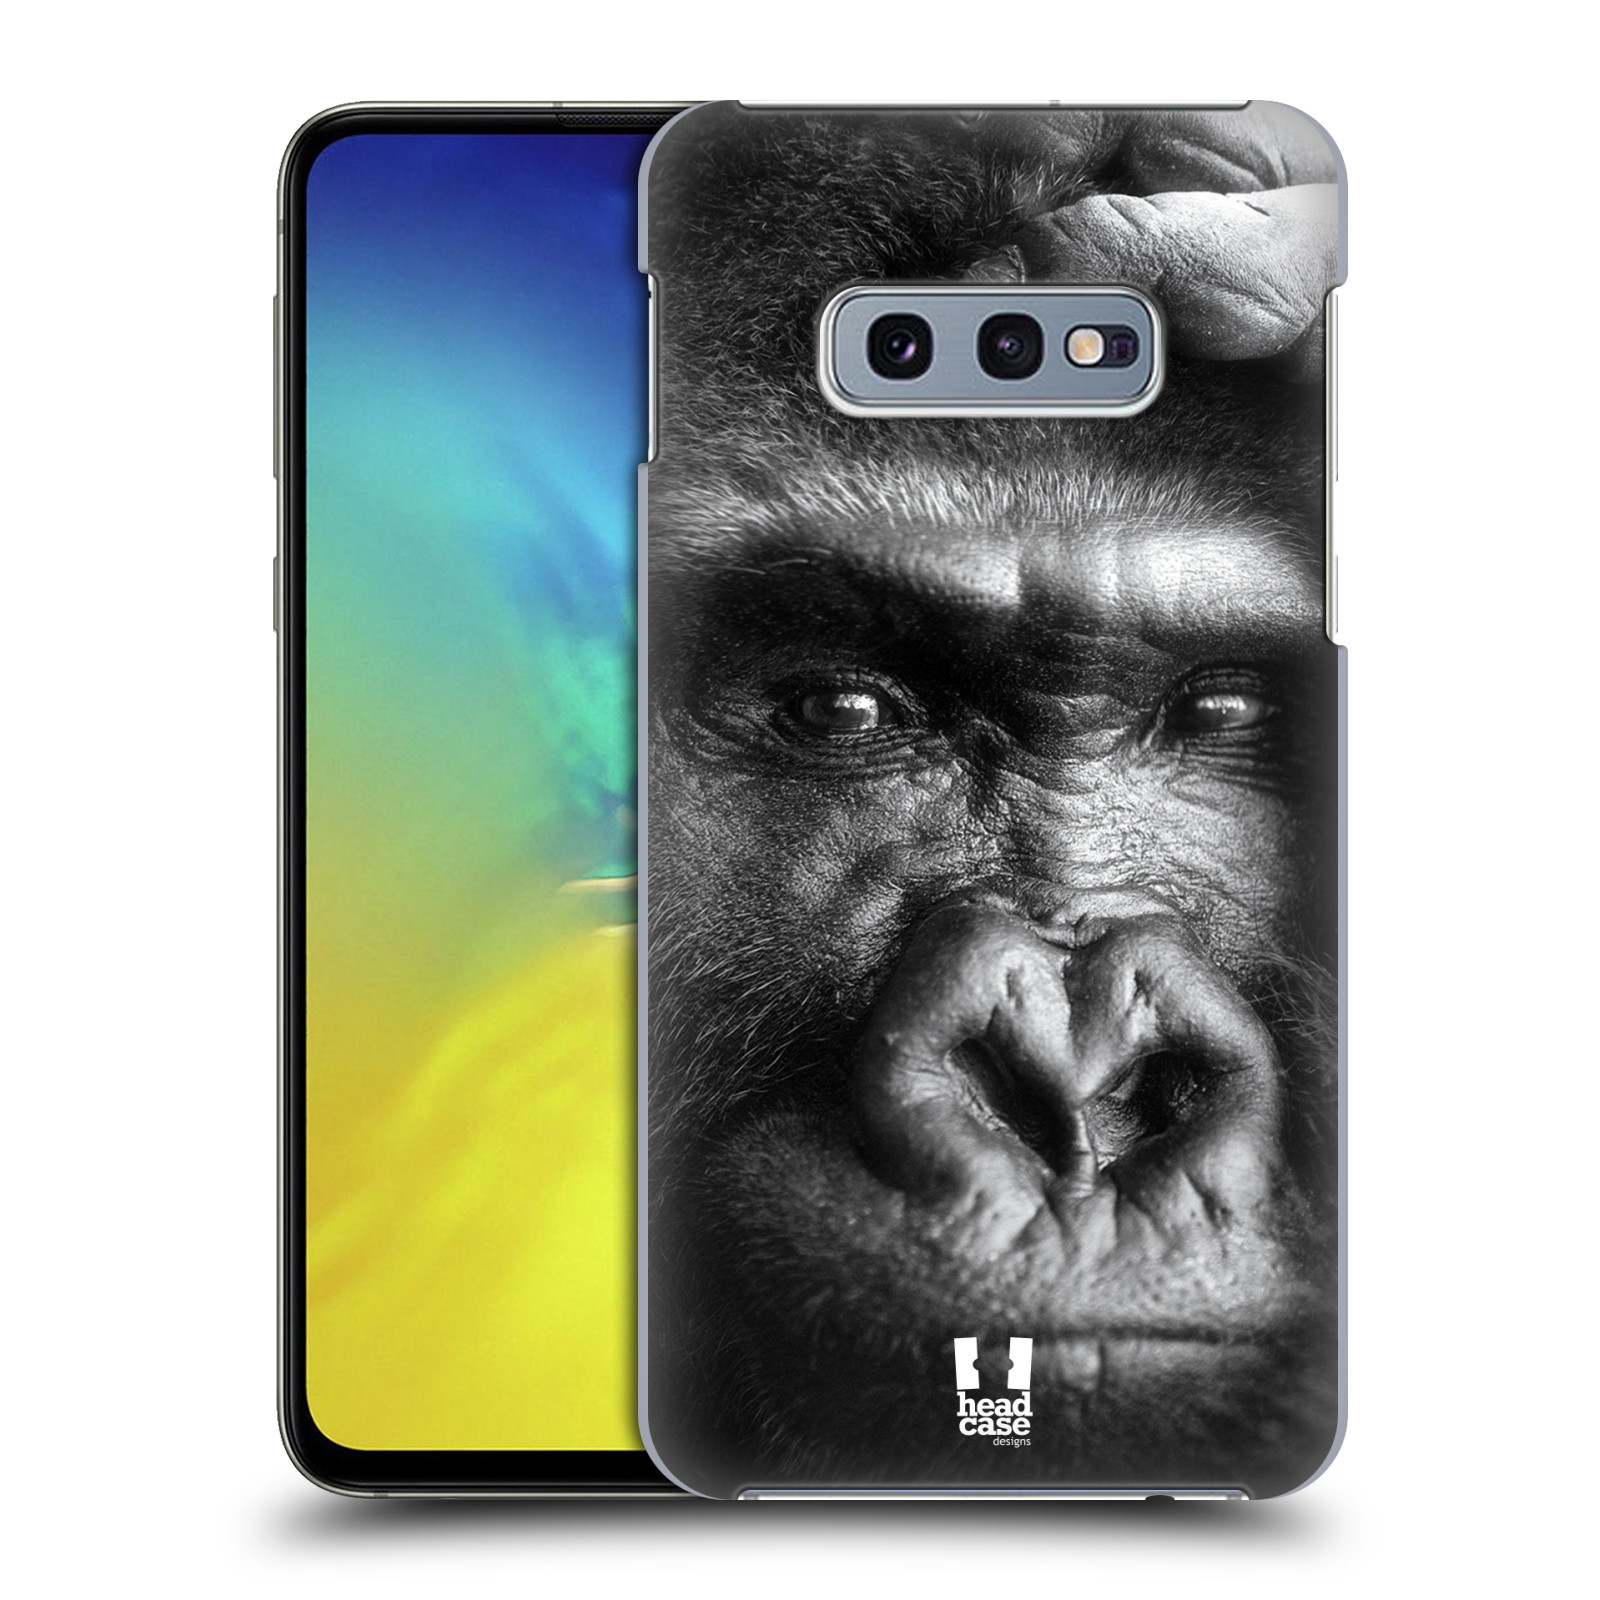 Pouzdro na mobil Samsung Galaxy S10e - HEAD CASE - vzor Divočina, Divoký život a zvířata foto GORILA TVÁŘ